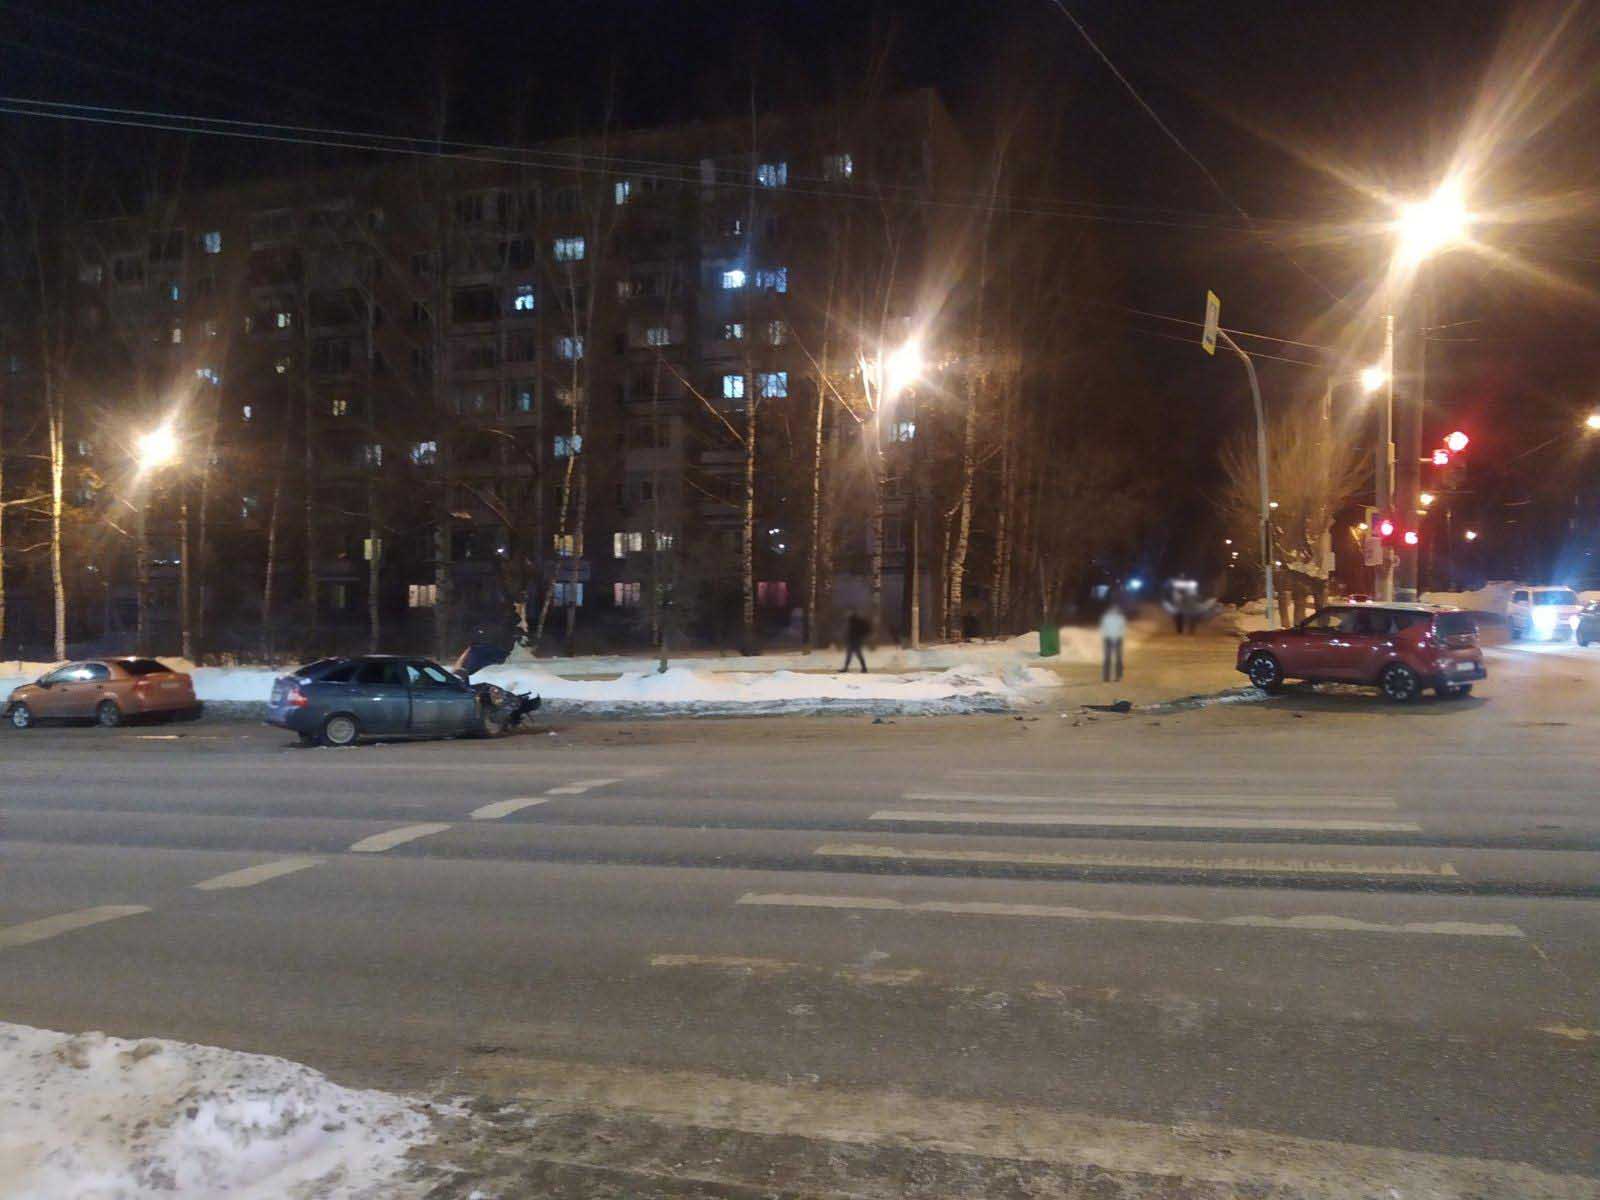 

Пьяный водитель «Киа» устроил массовое ДТП на улице Пушкинской в Ижевске

